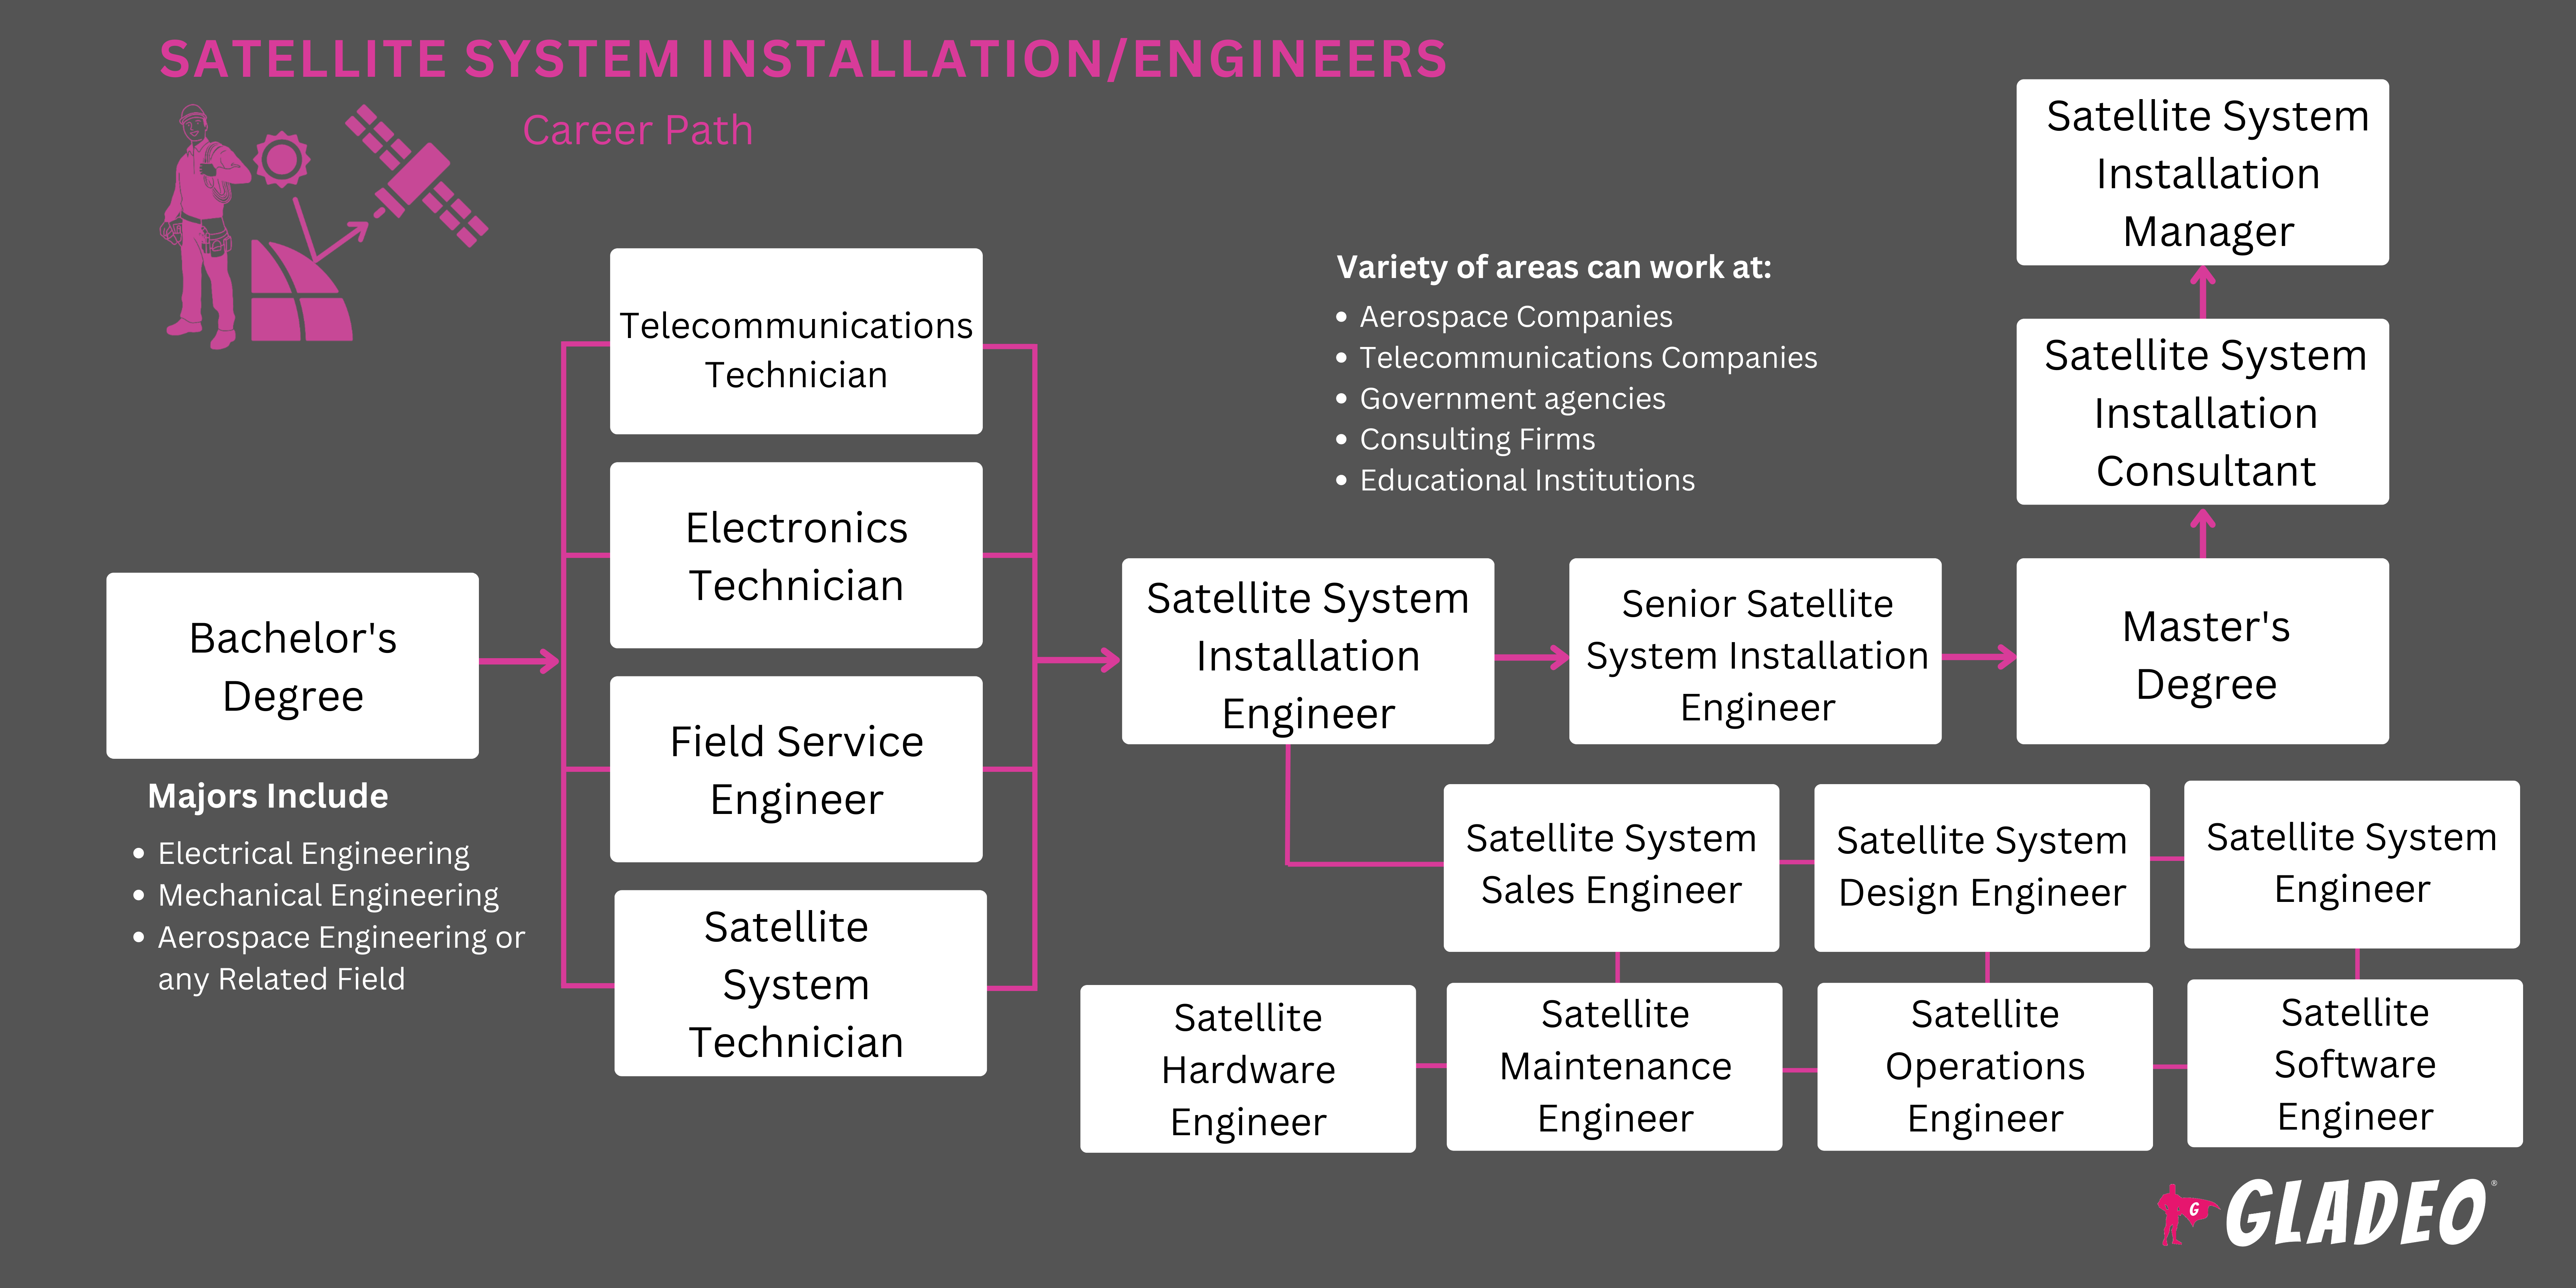 卫星系统安装/工程师路线图